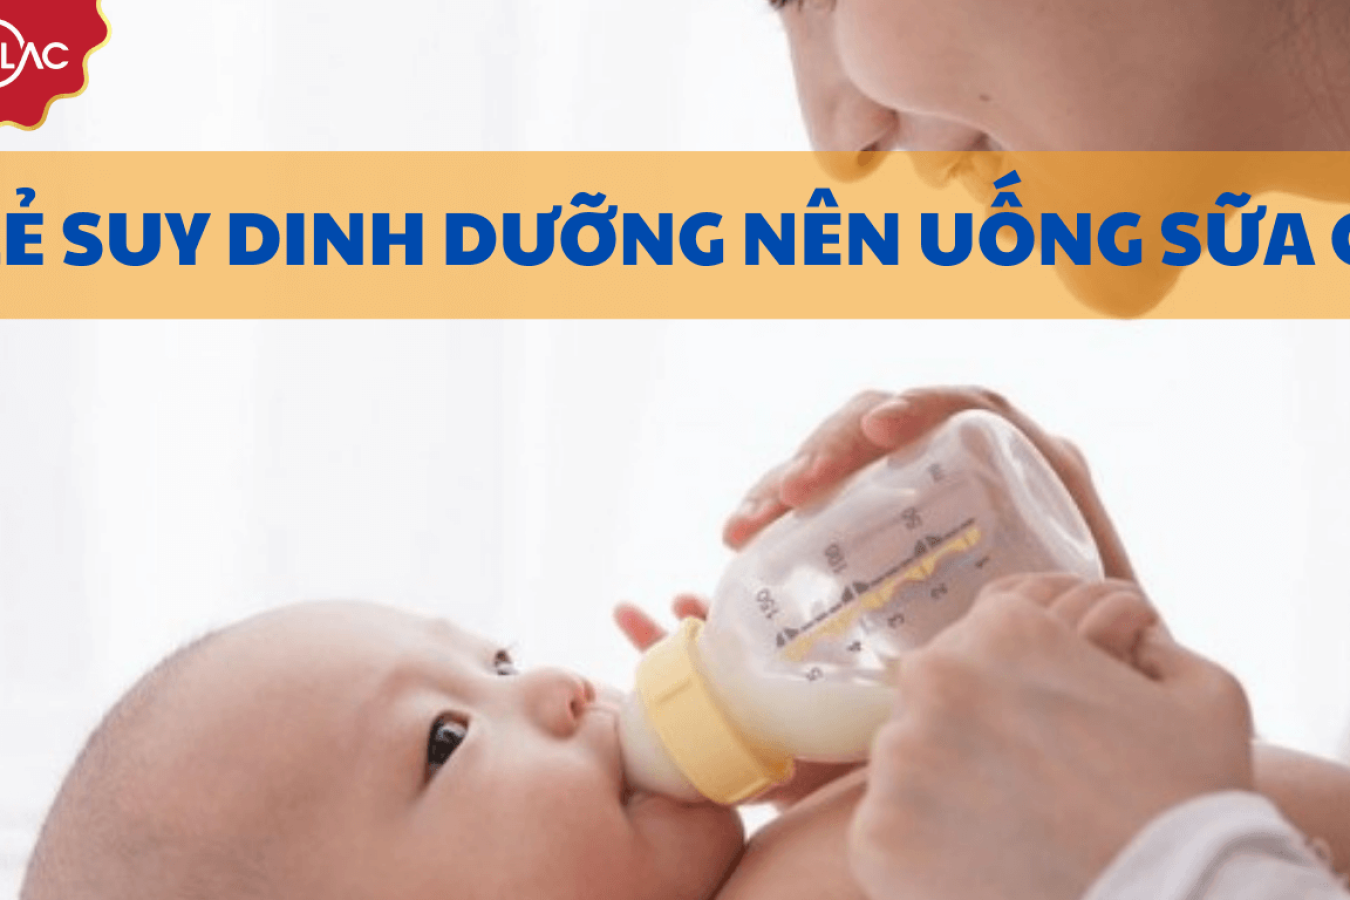 Trẻ suy dinh dưỡng nên uống sữa gì để tăng cân an toàn